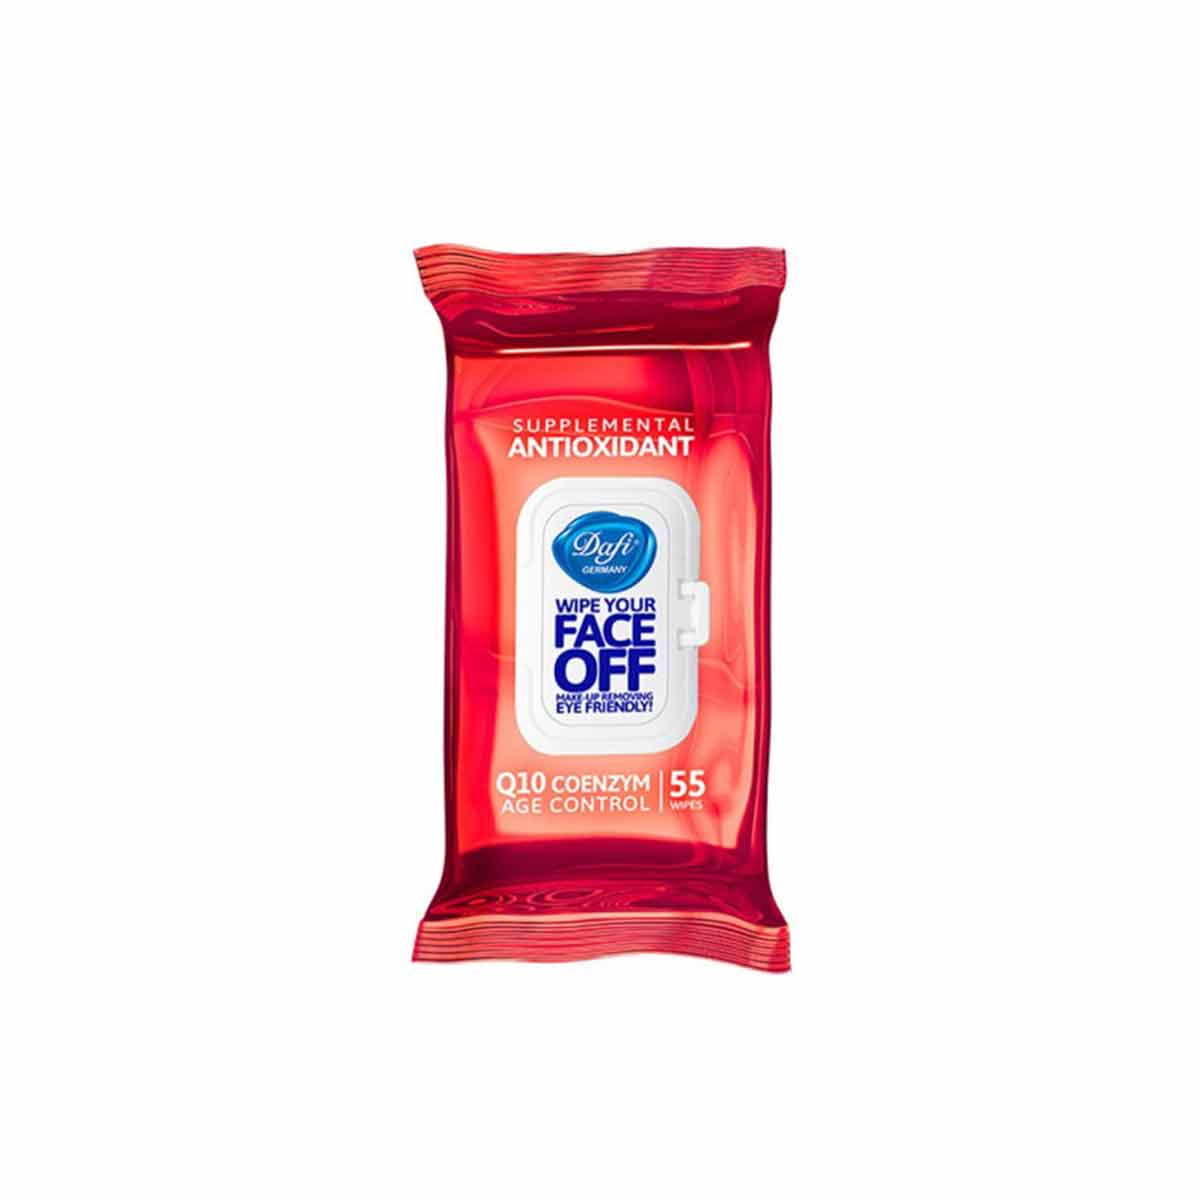 دستمال مرطوب دافی Dafi پاک کننده آرایش مدل آنتی اکسیدانت کیو تن Q10 بسته 55 برگی